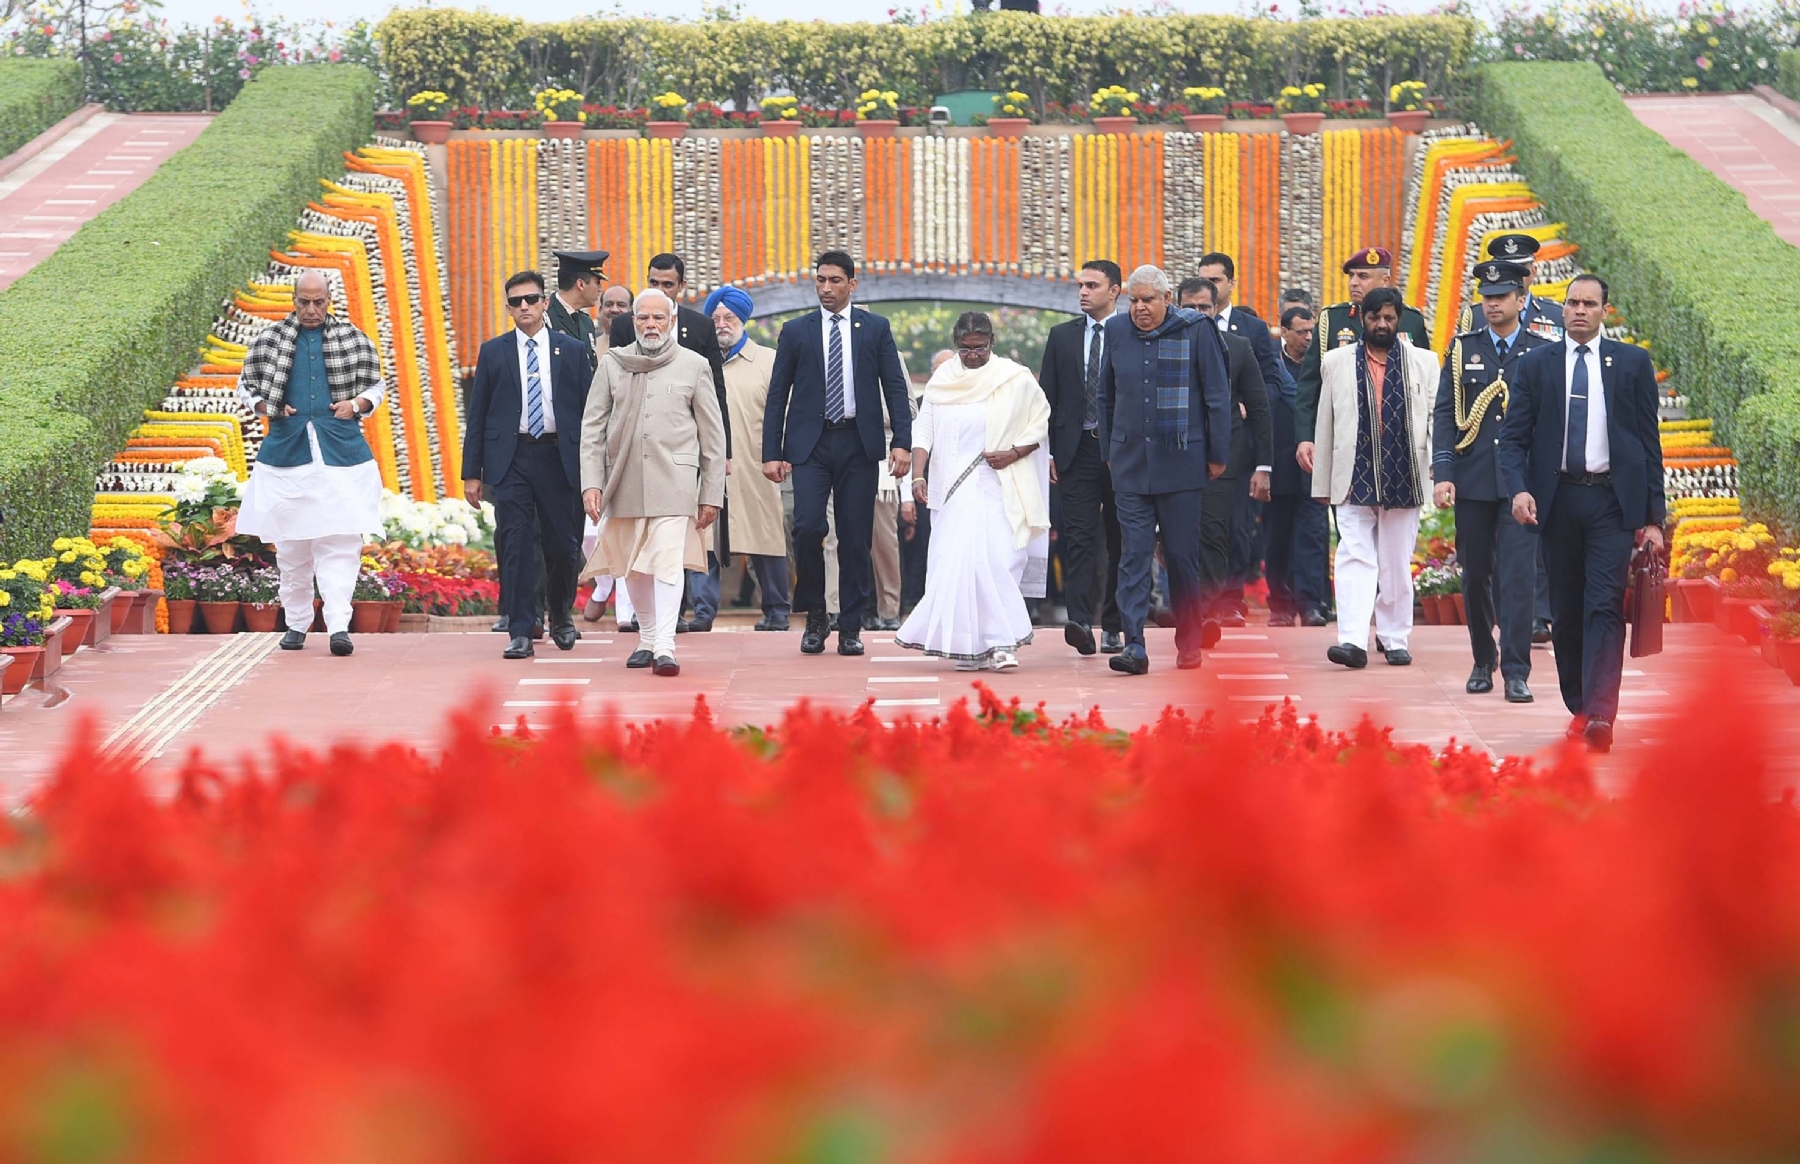 नई दिल्ली में समवार 30 जनवरी 2023 को राष्ट्रपति, श्रीमती। द्रौपदी मुर्मू ने शहीद दिवस के अवसर पर गांधी स्मृति में श्रद्धांजलि अर्पित करती हुई। हिन्दुस्थान समाचार/ फोटो गणेश बिष्ट 